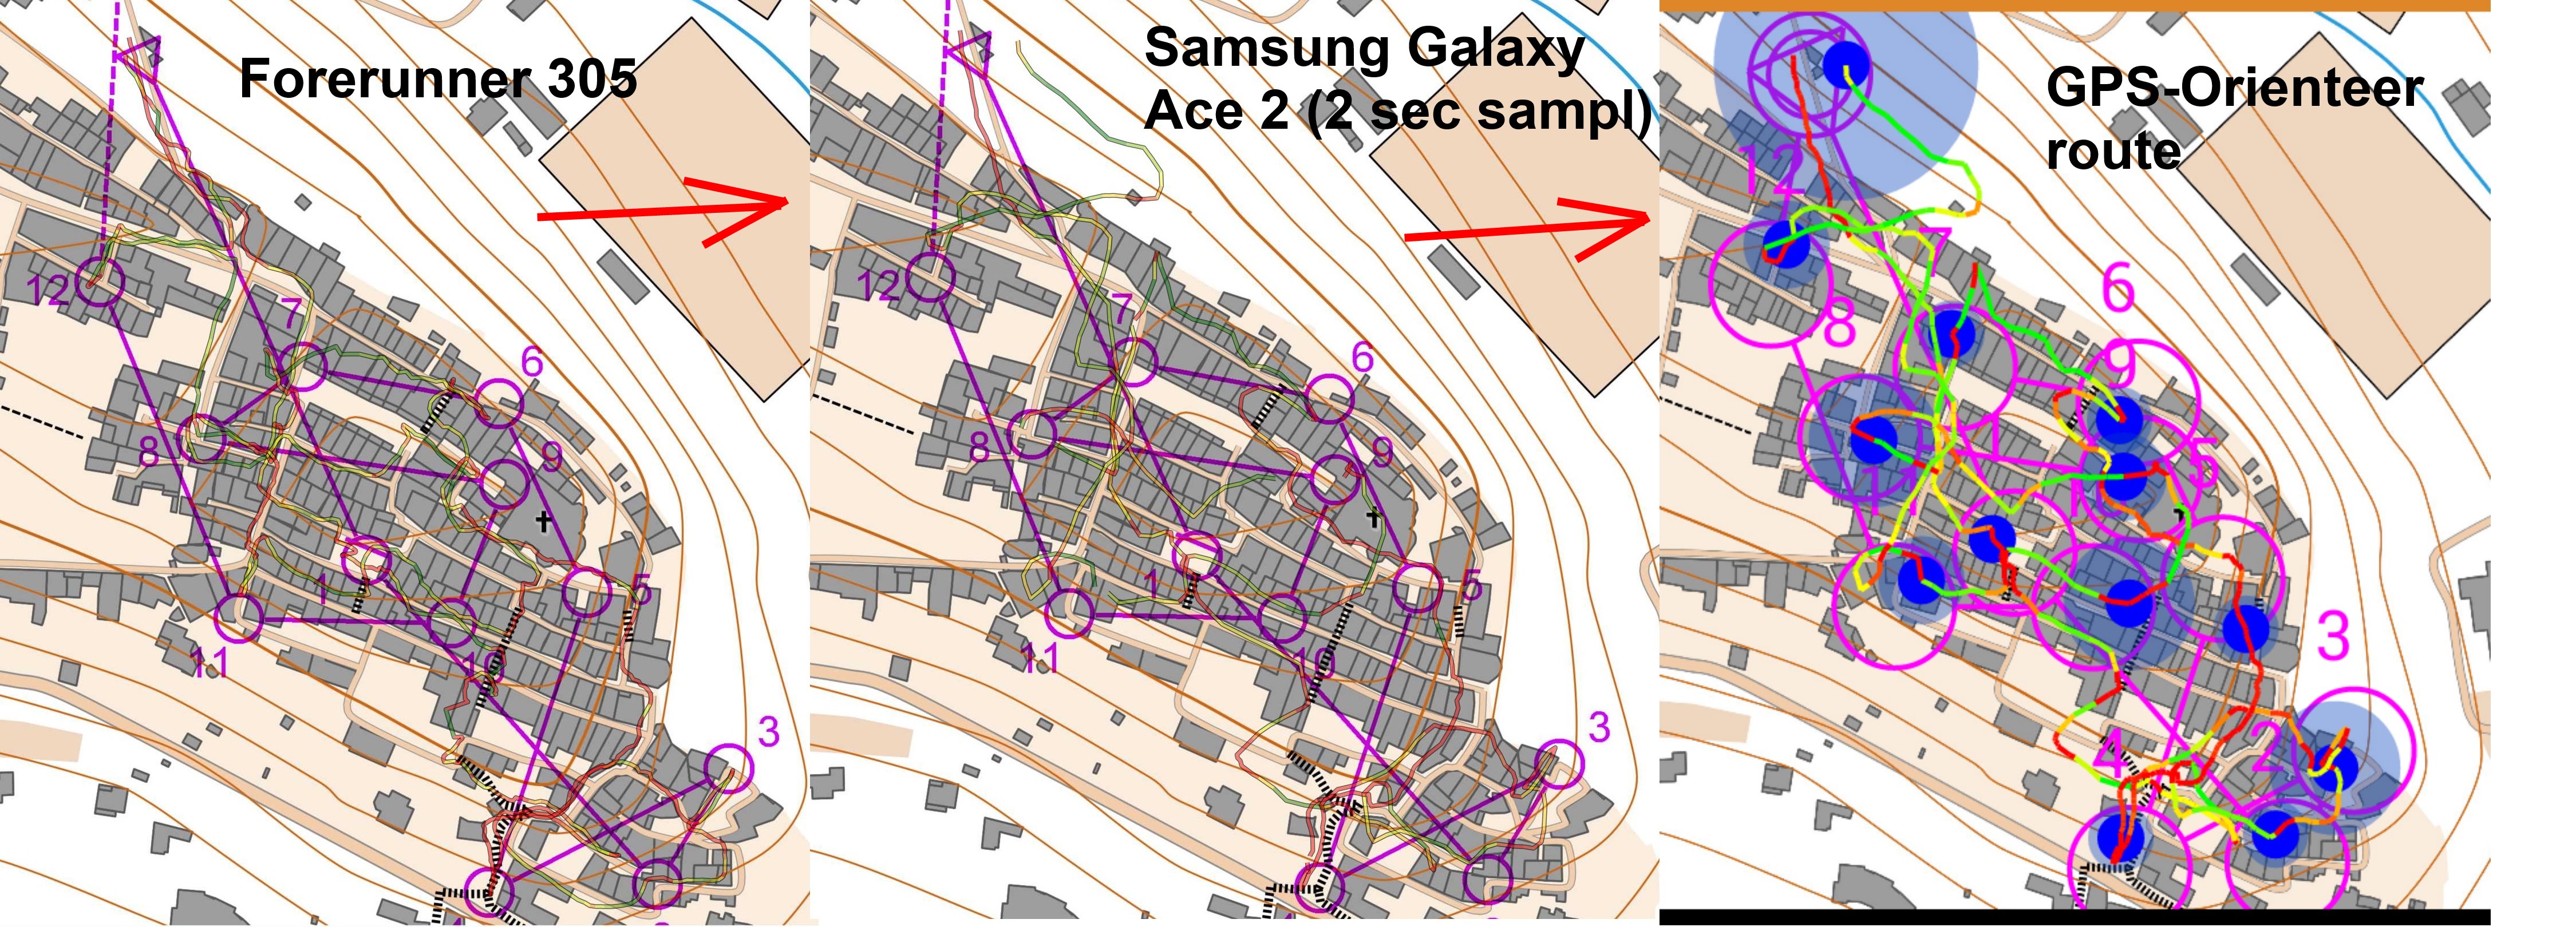 Test of GPS-Orienteering app in town (29/10/2013)